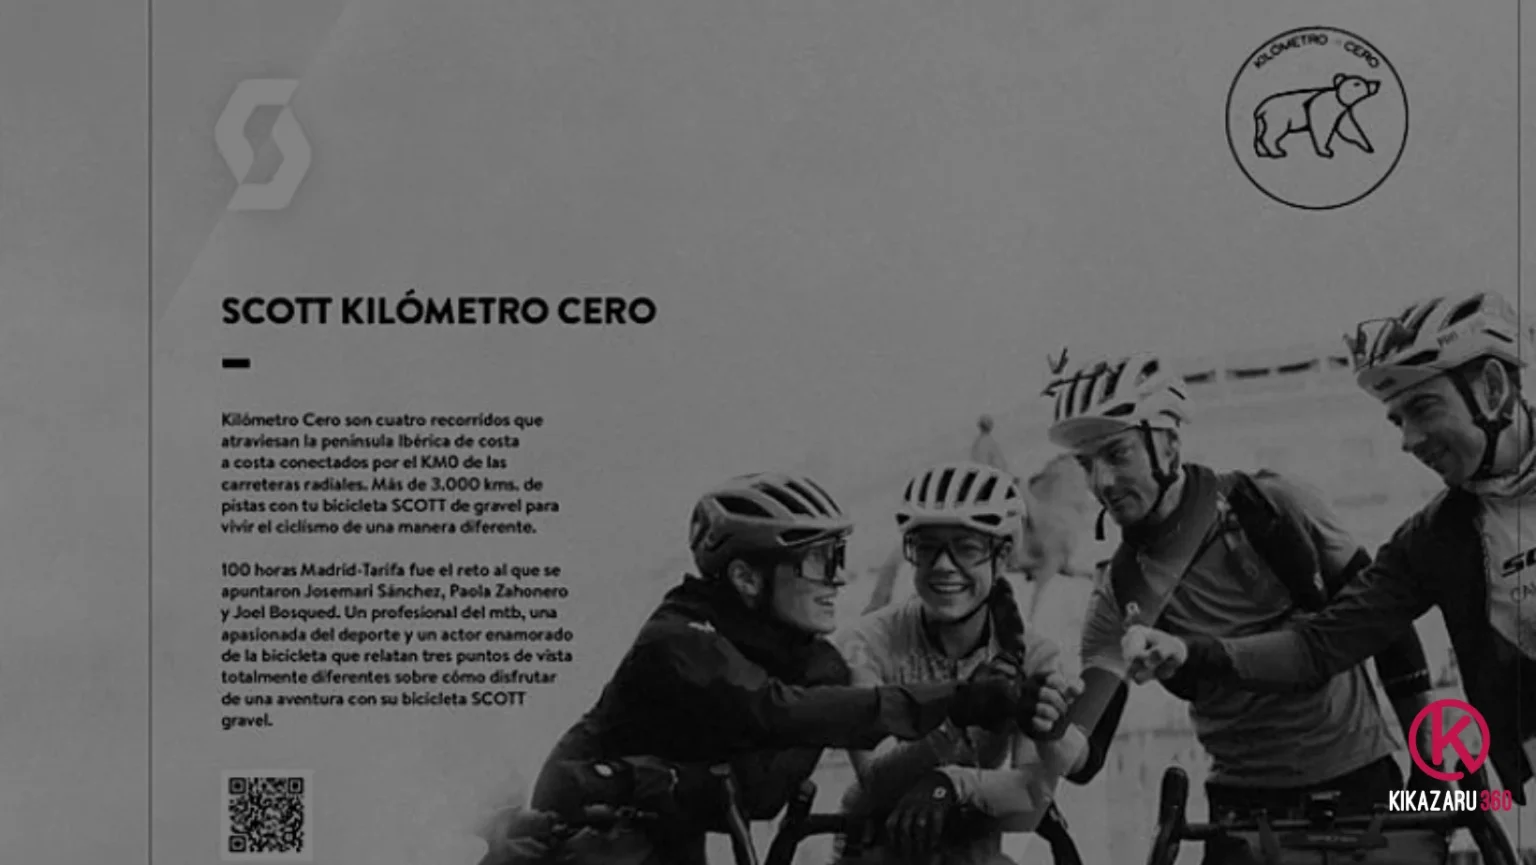 Kikazaru 360, El Kilómetro Cero y SCOTT presentan: “Scott Kilómetro Cero, Madrid-Tarifa”, en Festibike 2023, en Las Rozas, Madrid.